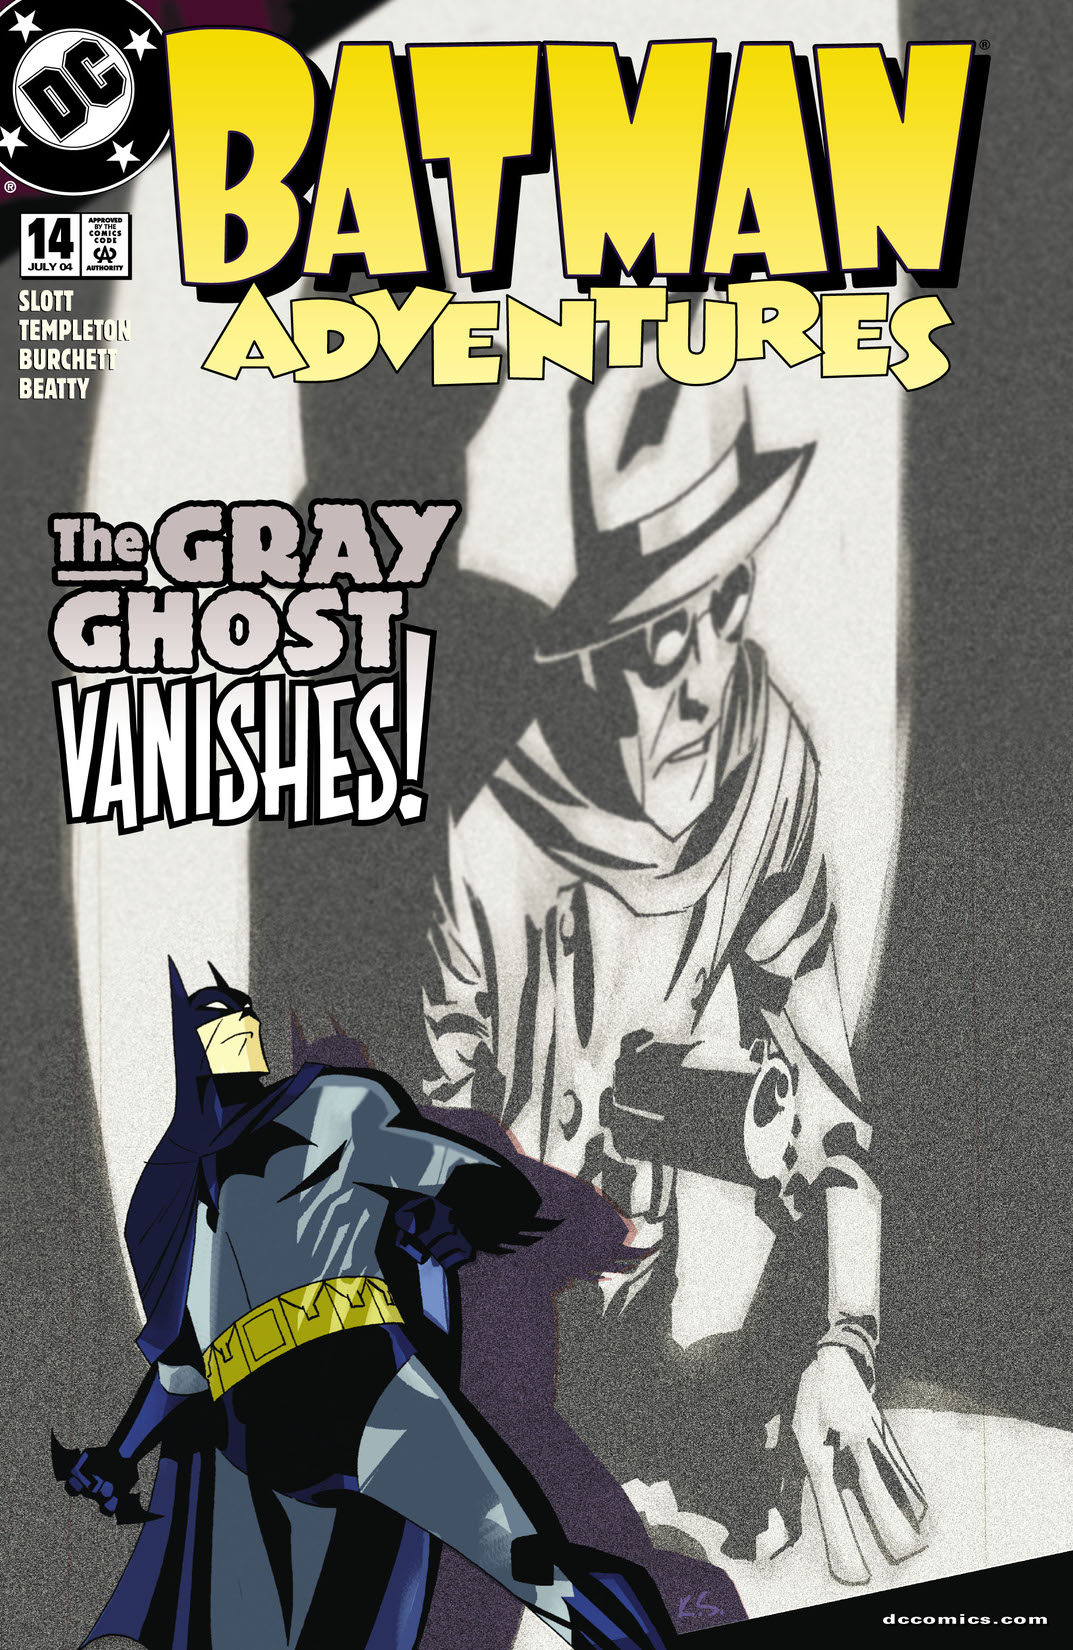 Batman Adventures #14 preview images